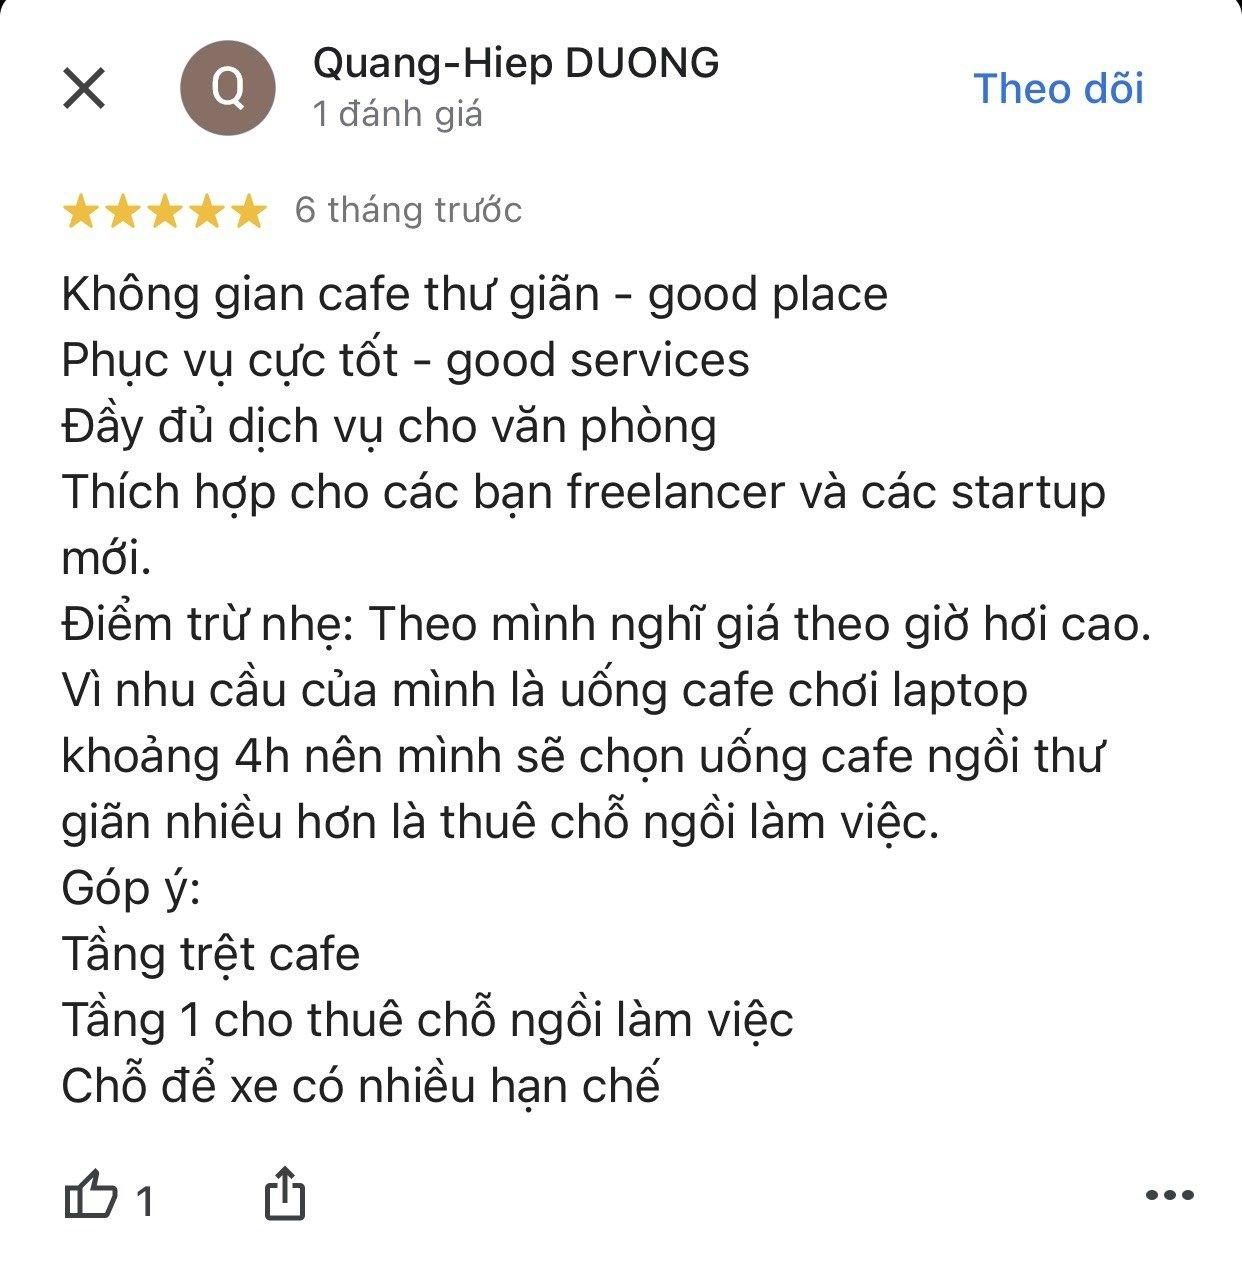 Đánh giá của khách hàng Quang-Hiep DUONG về Wor.kafe trên Google Map